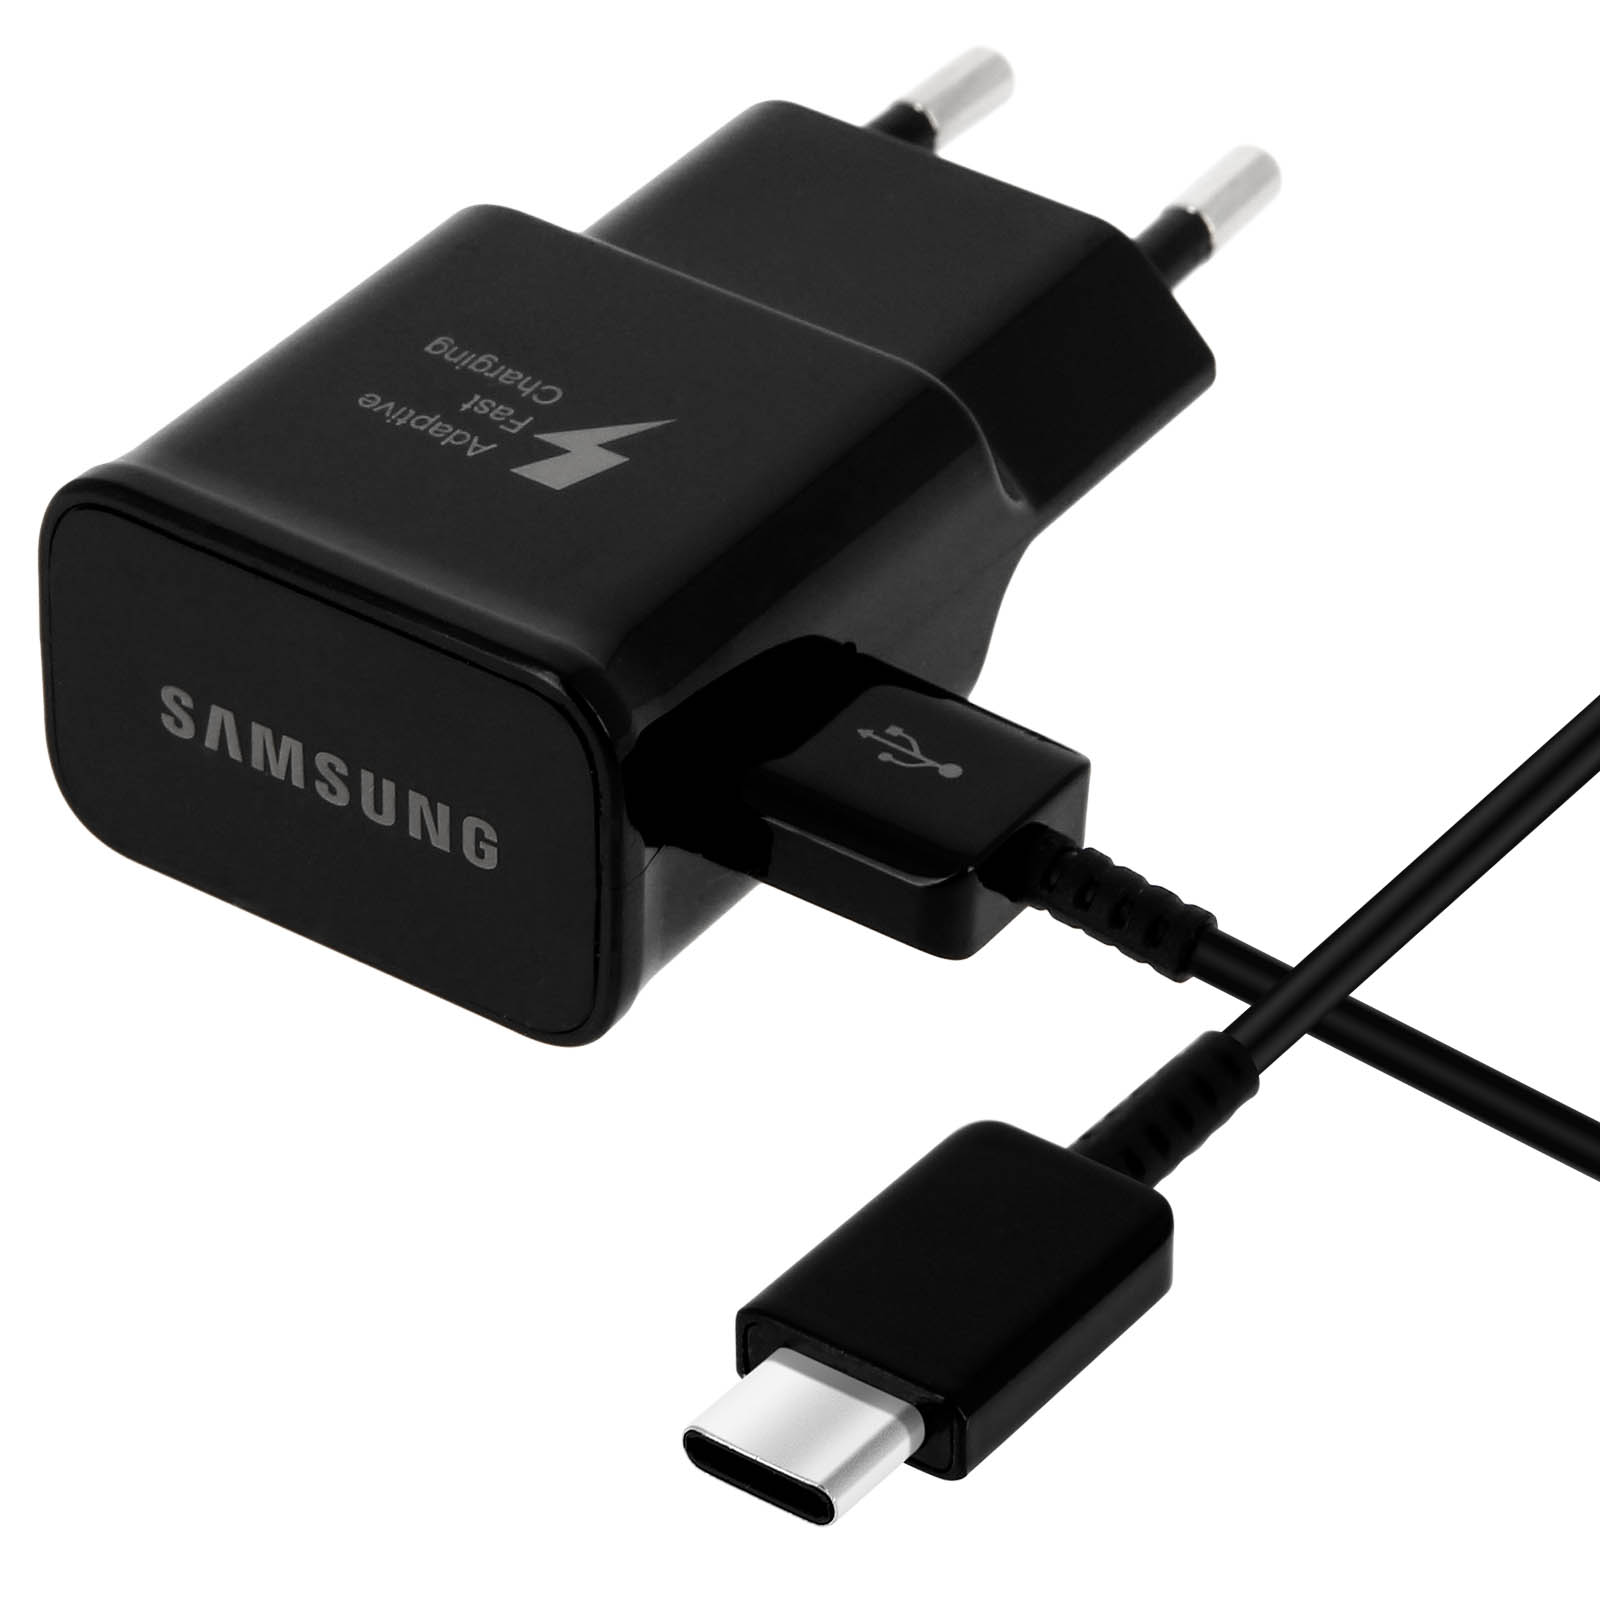 SAMSUNG Netzteil, 1.67A USB-C Wand-Ladegerät Schwarz Netzteile Samsung